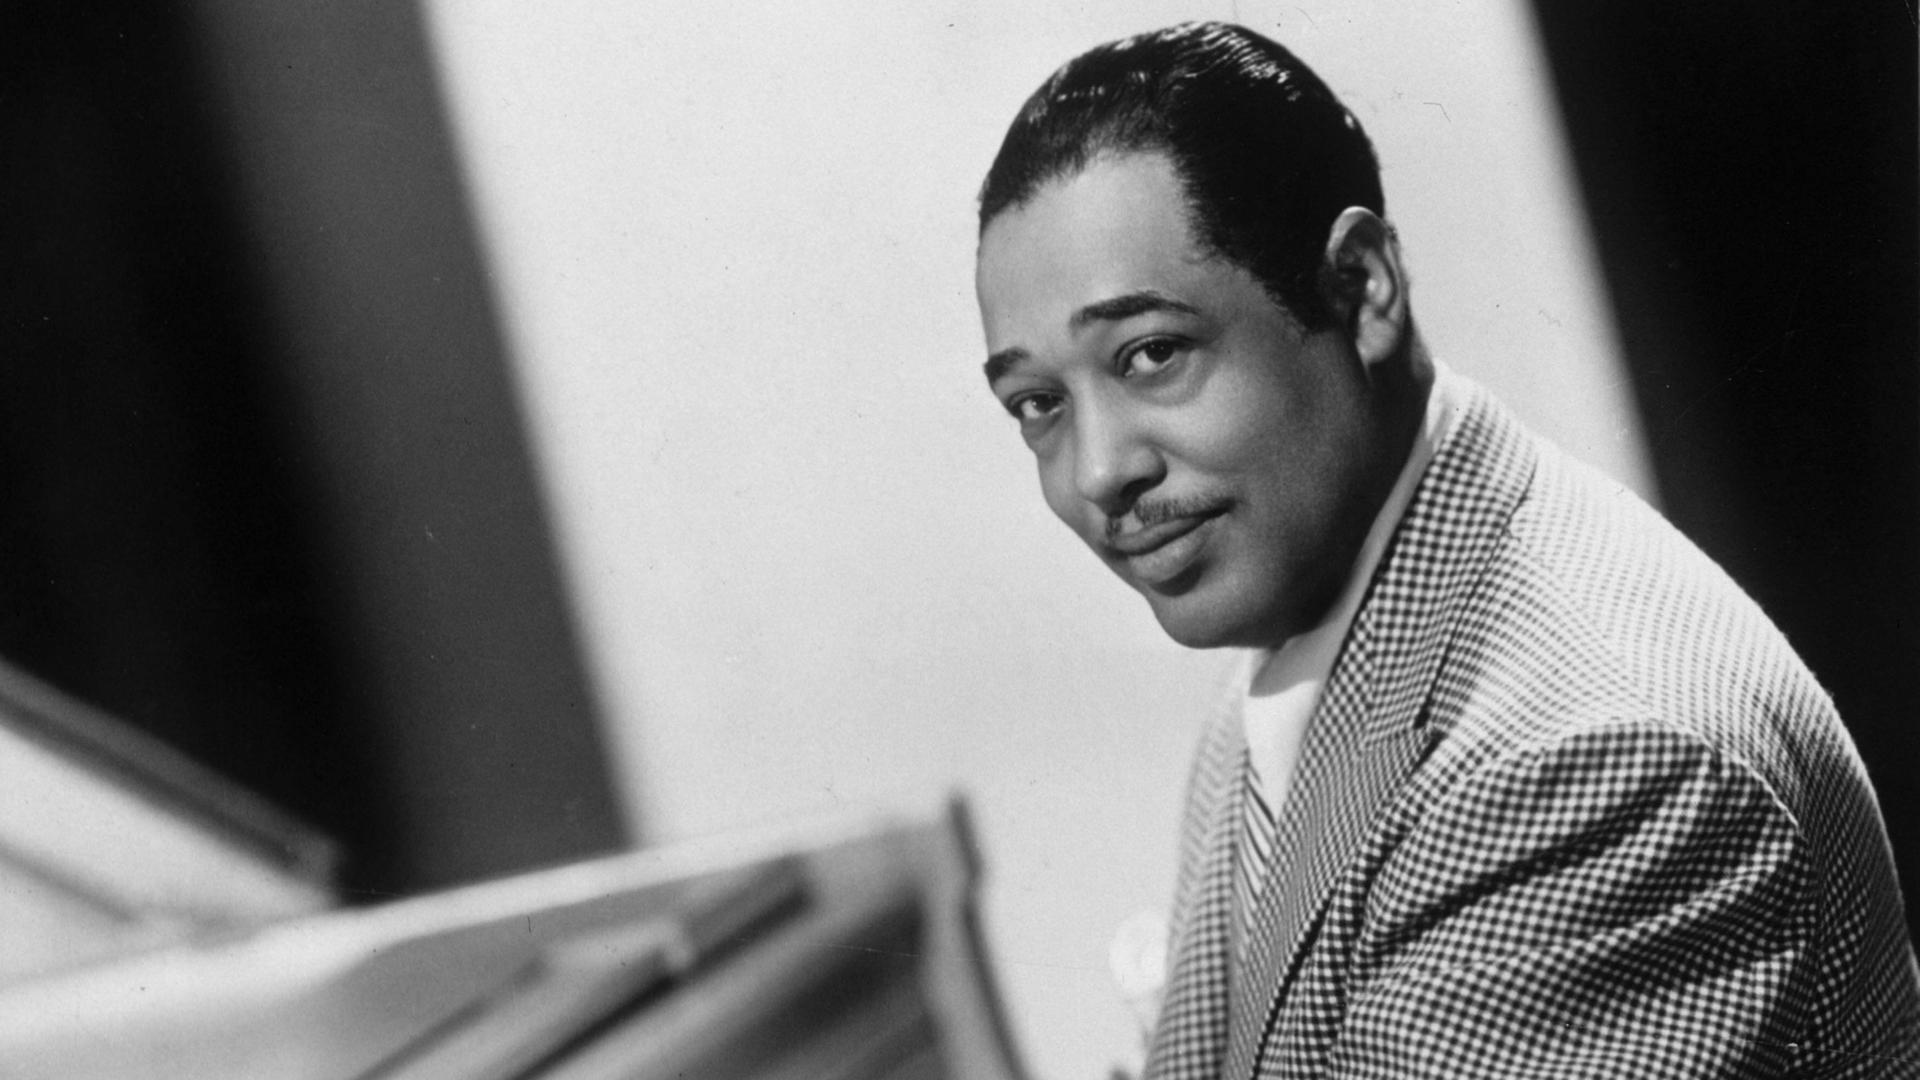 Ein afroamerikanischer Musiker sitzt am Klavier. Es ist der Jazzmusiker Duke Ellington.